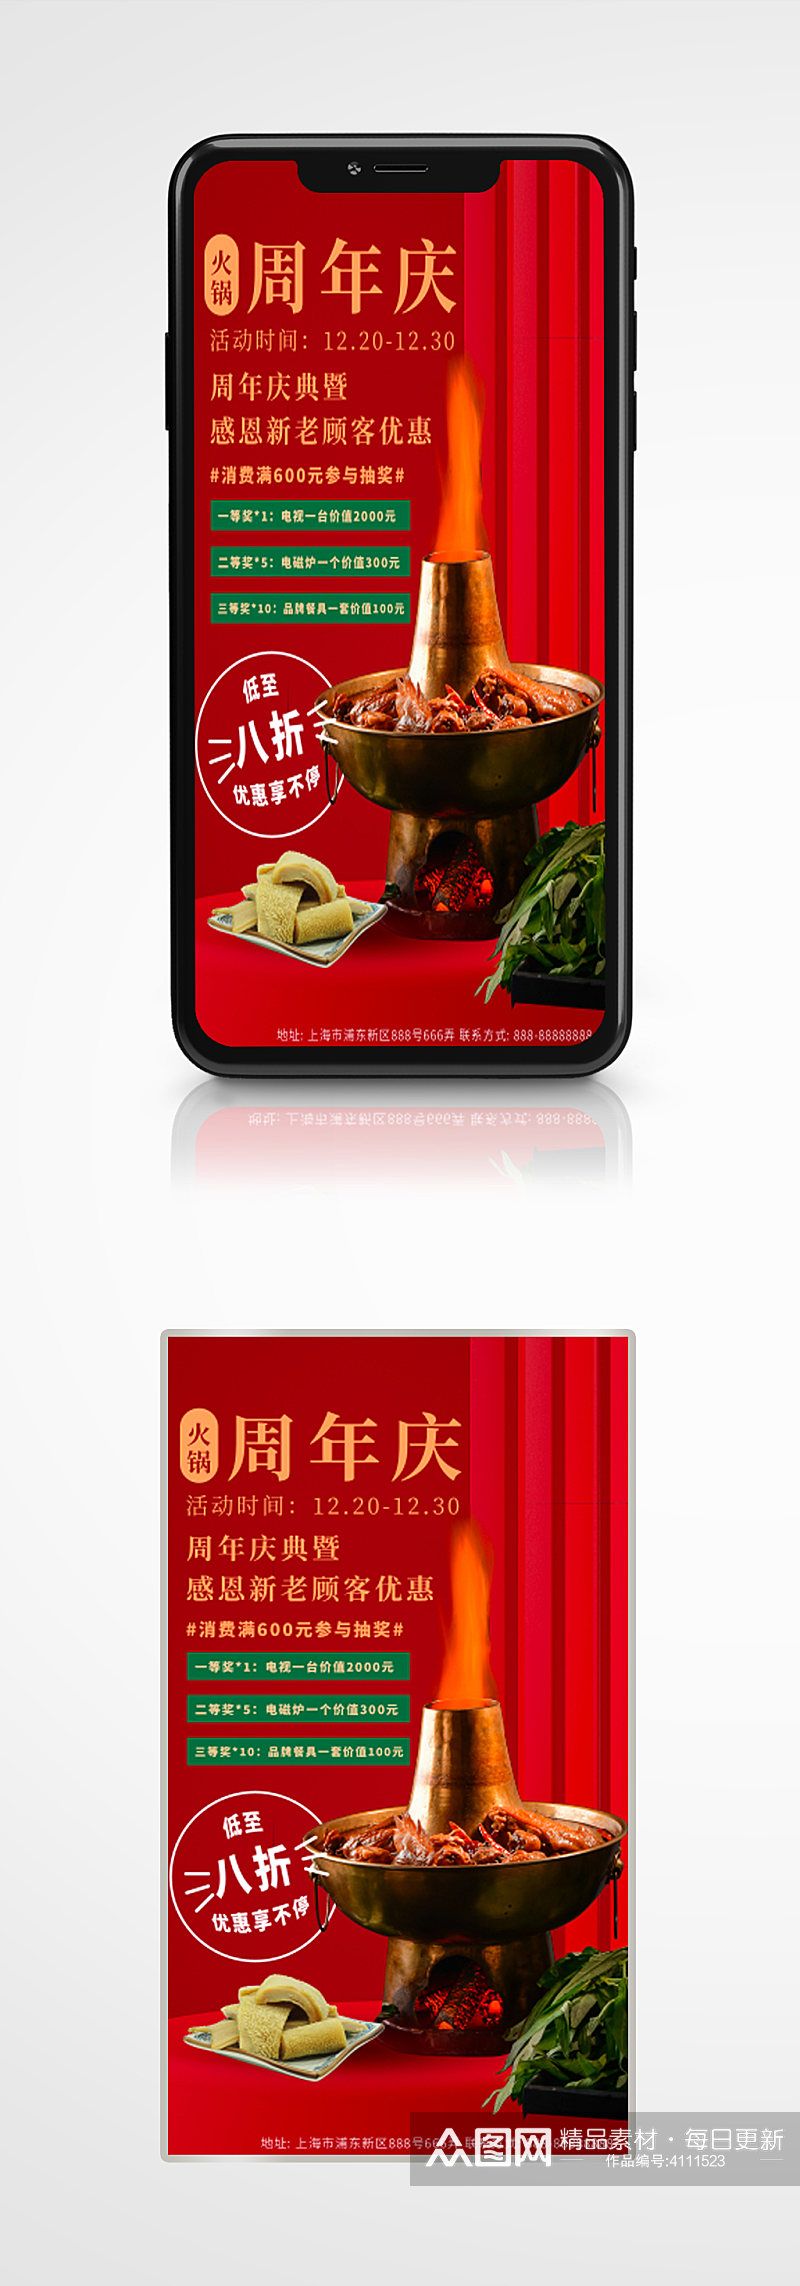 火锅周年店庆餐饮促销手机海报餐厅素材